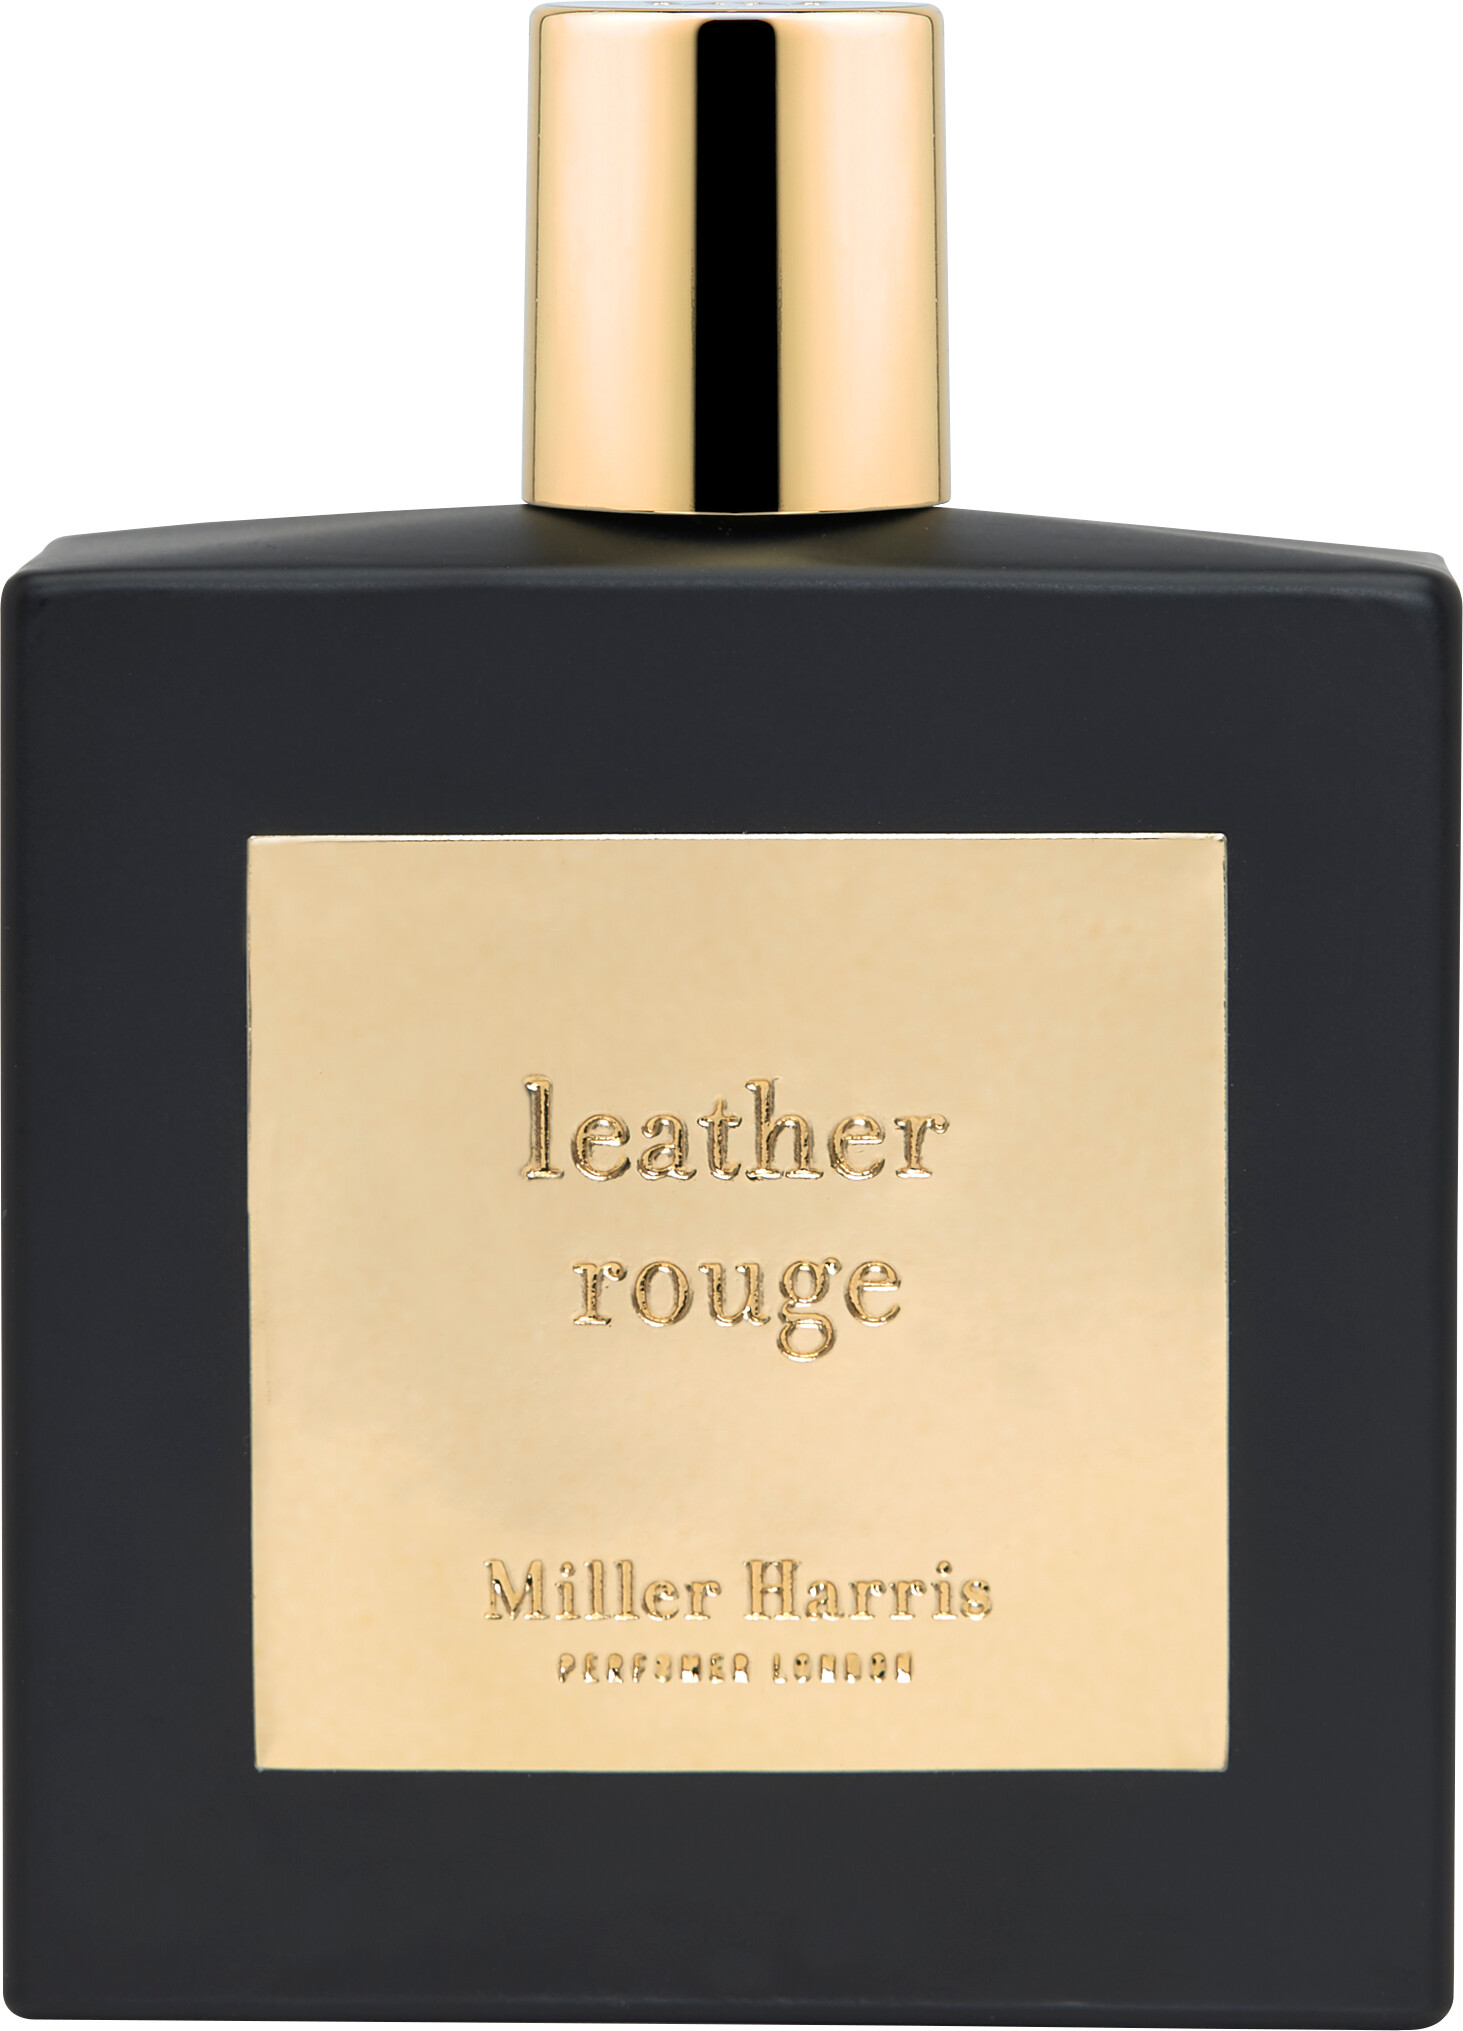 Miller Harris Leather Rouge Eau de Parfum